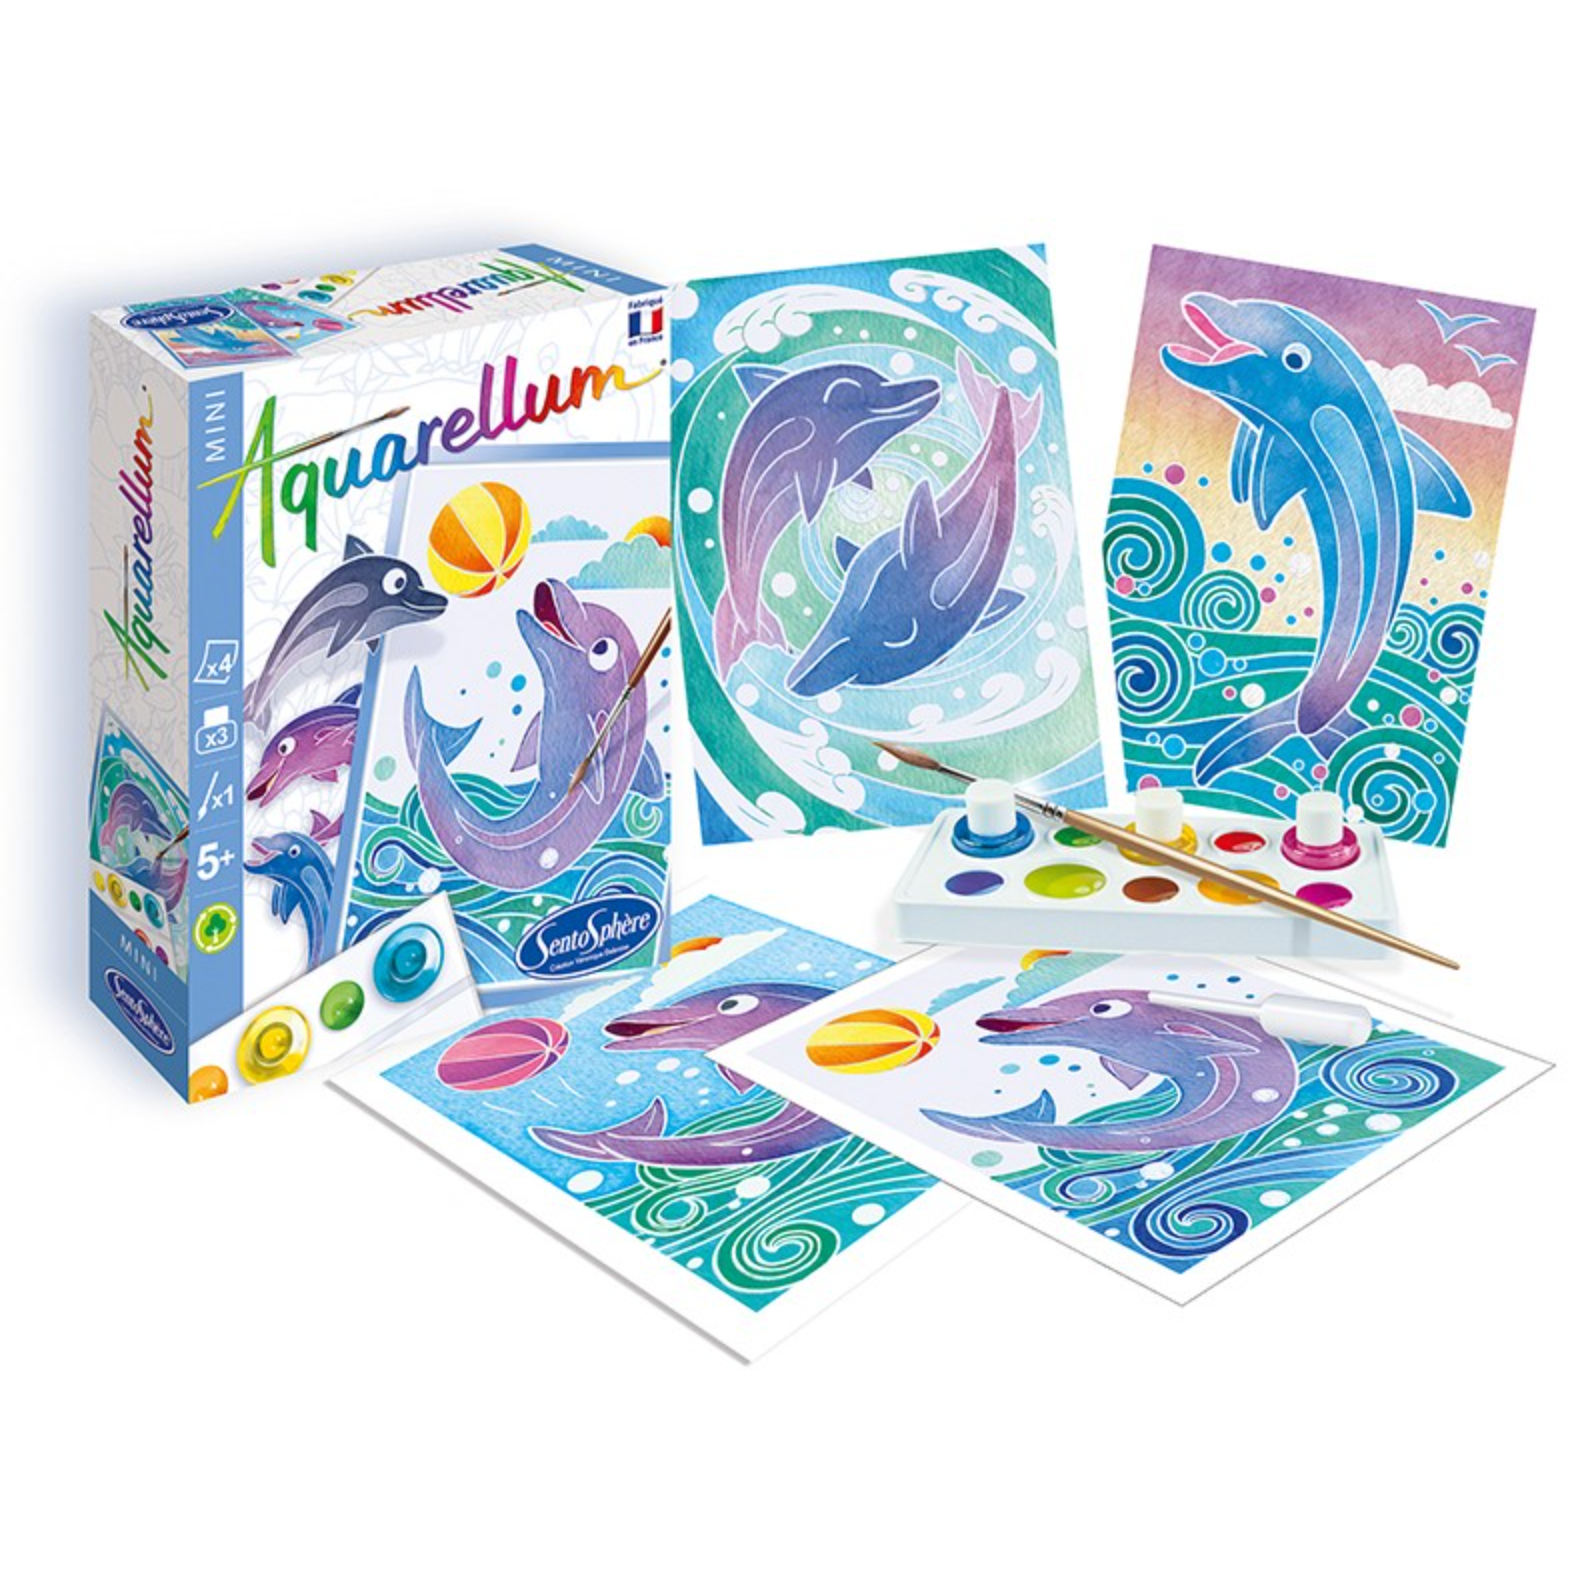 Aquarellum - A magic painting technique! 